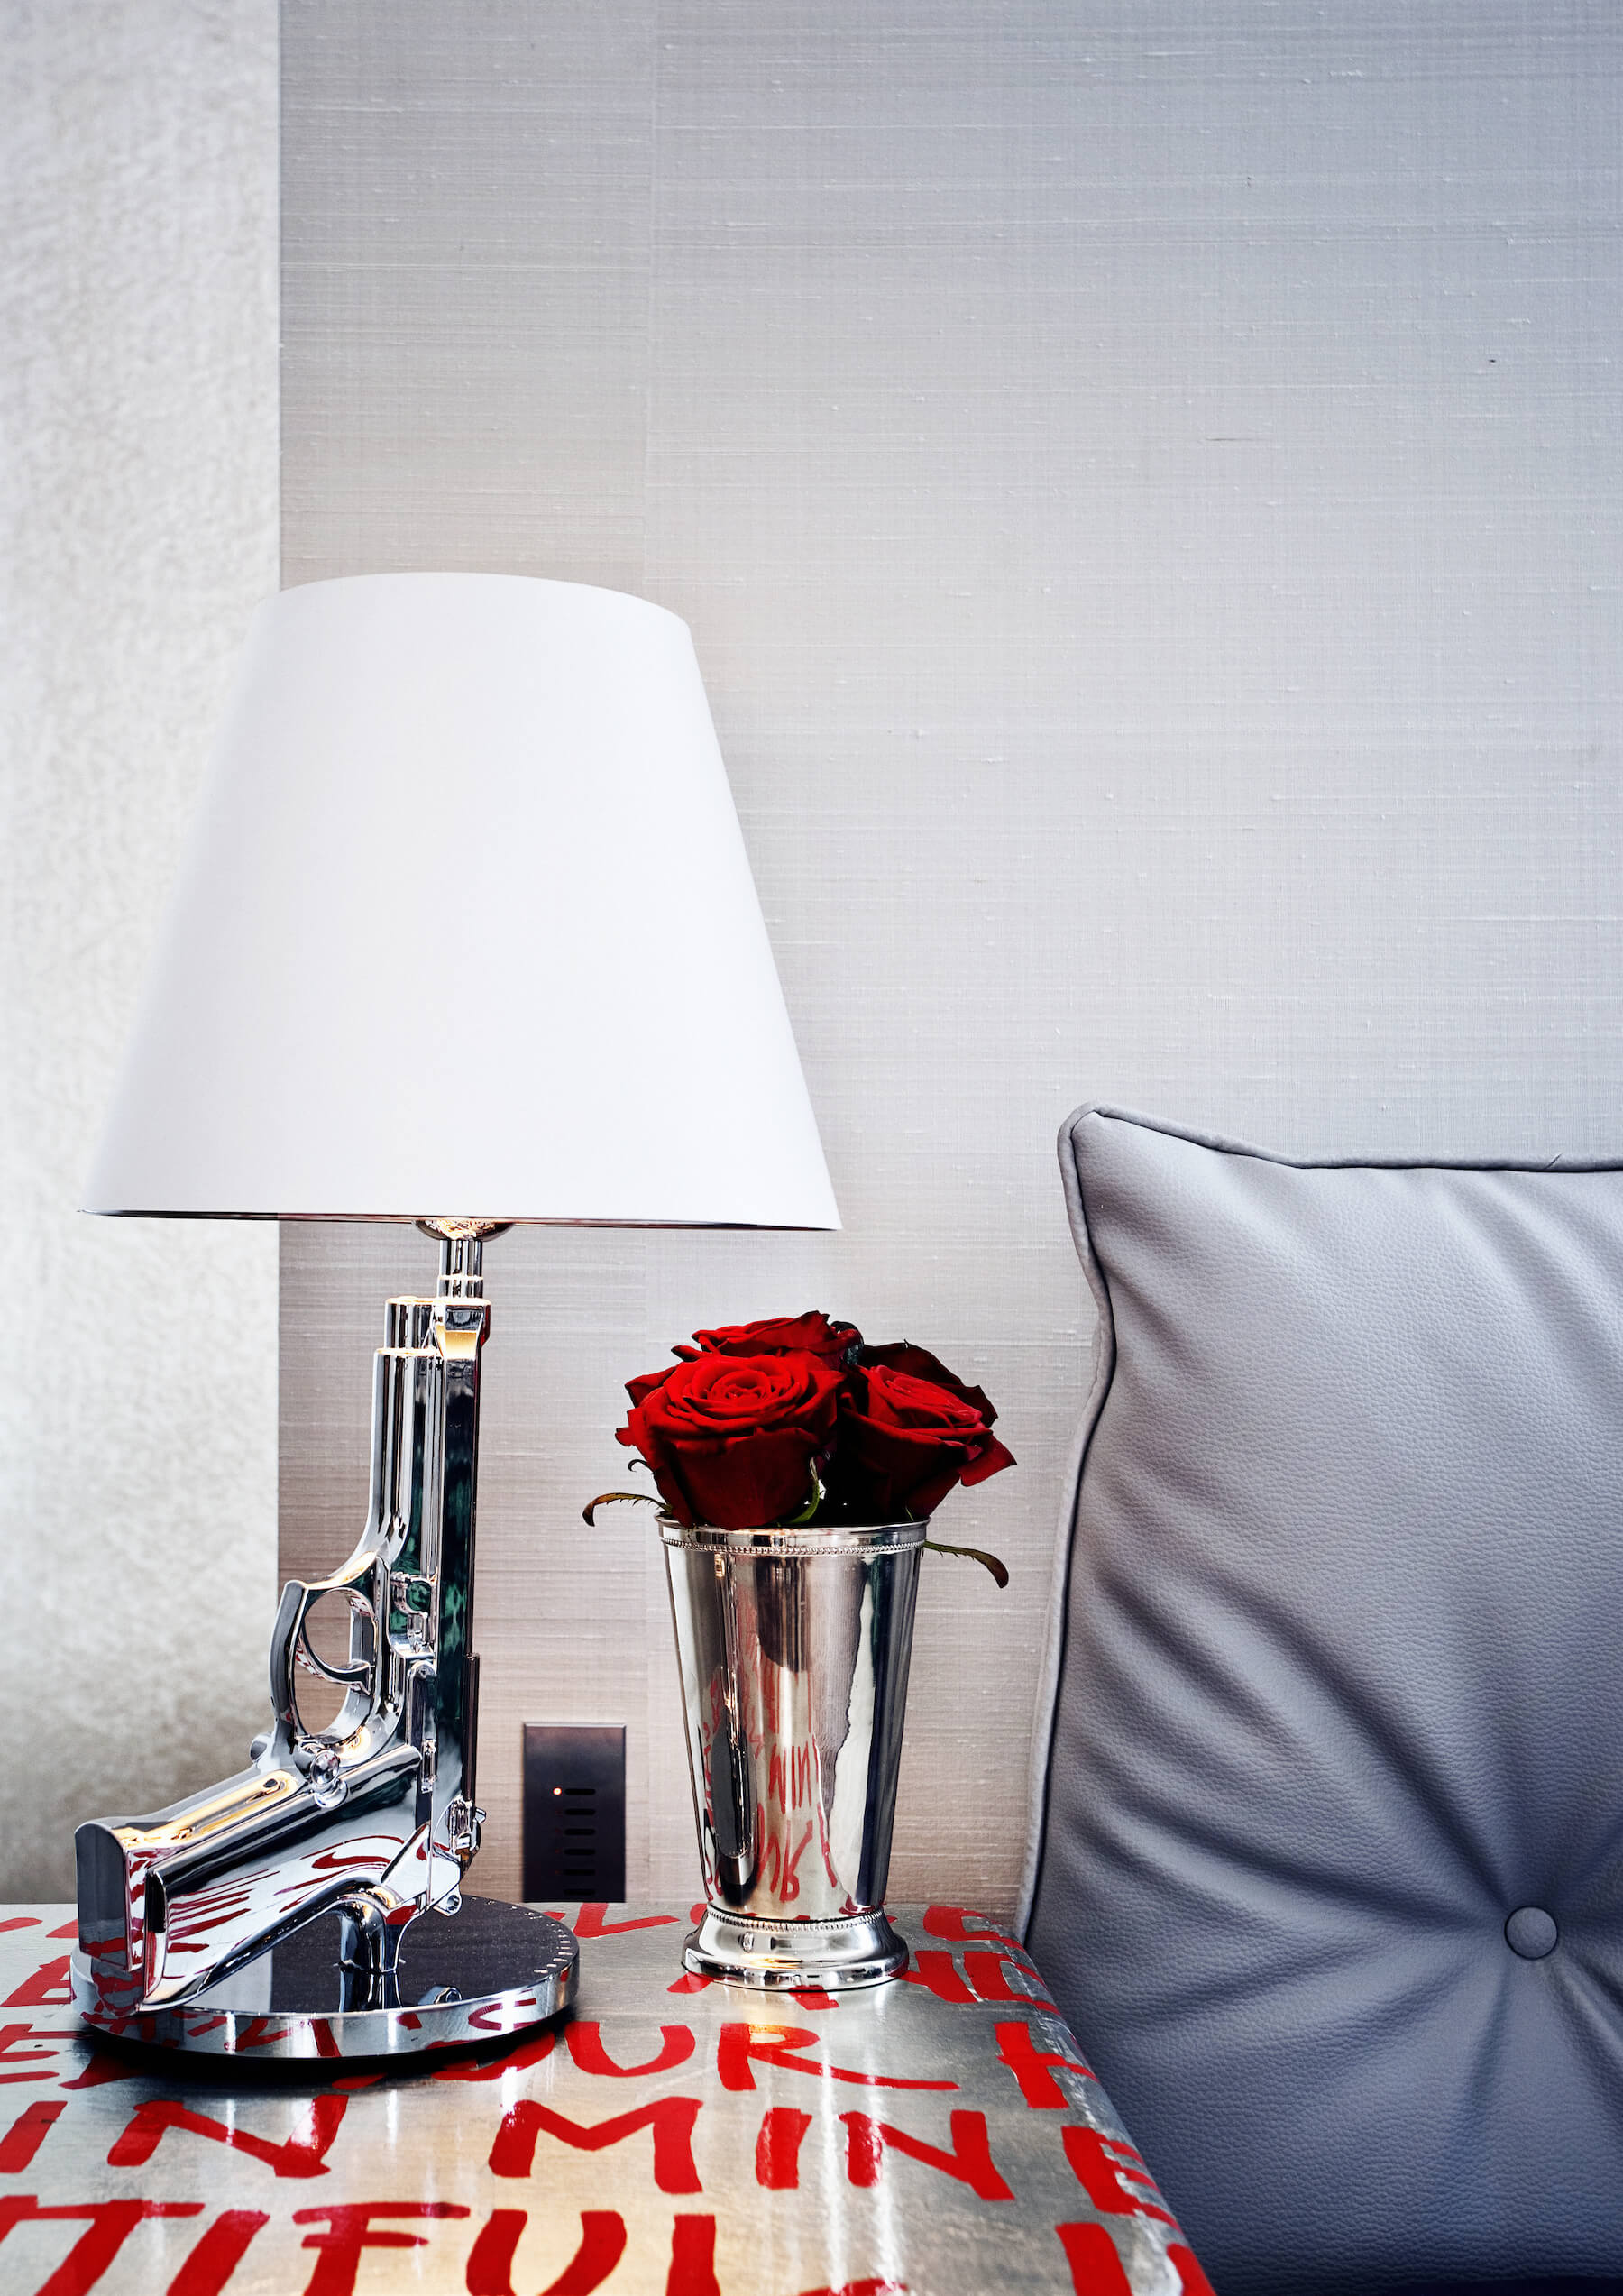 银色调床边梳妆台与红色文字绘画持有一个镀铬花瓶和这引人注目的手枪设计灯。